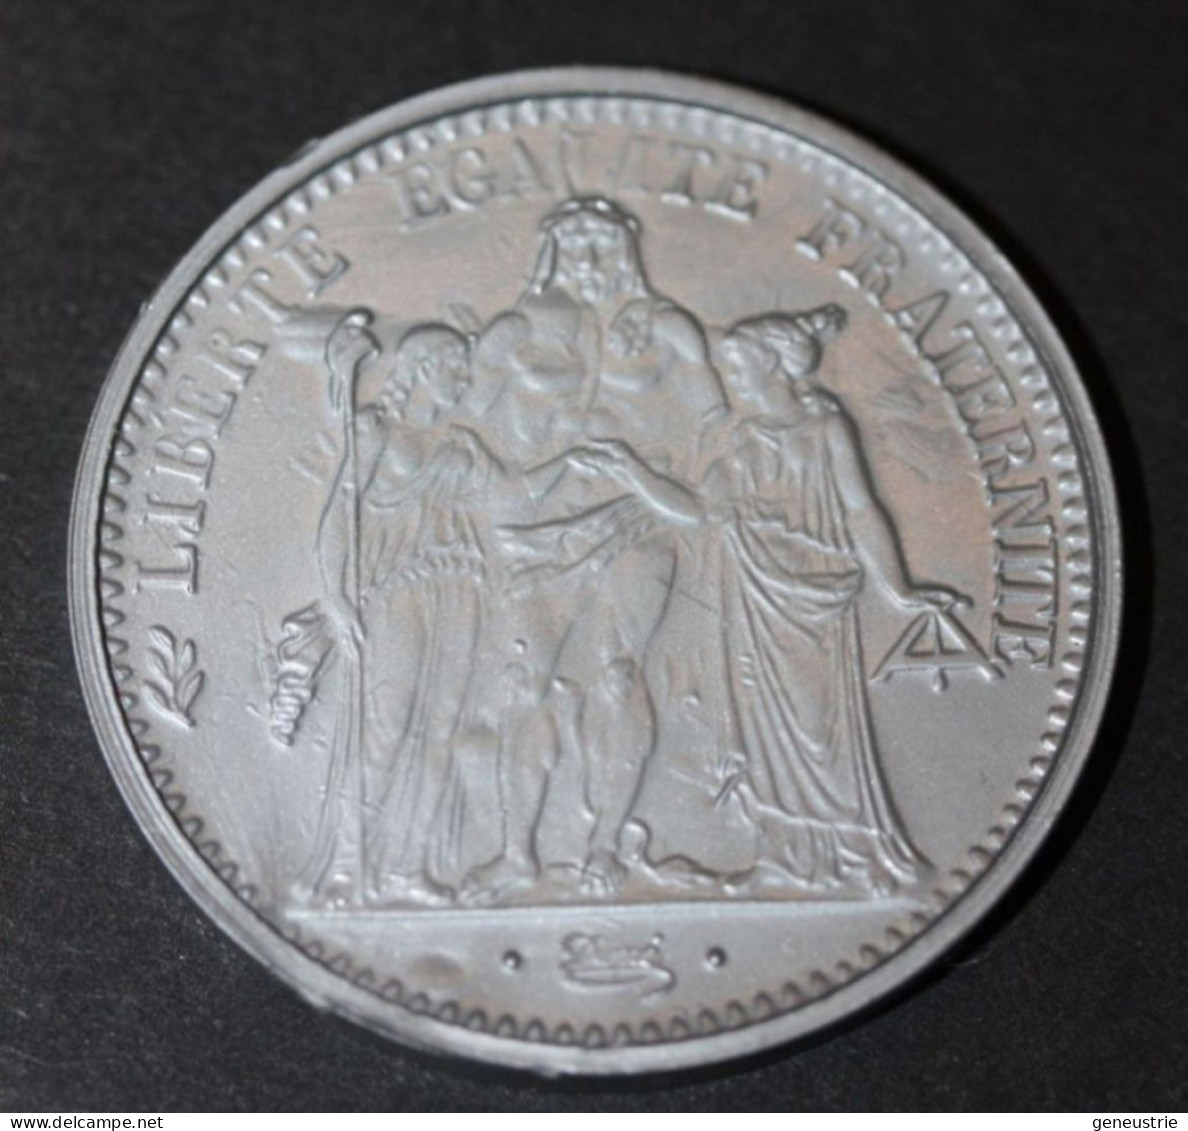 Pièce De 10 Francs Type Hercule 1965 - Jeton Plastique école En Francs Années 60 - Coins School Token - Professionnels / De Société